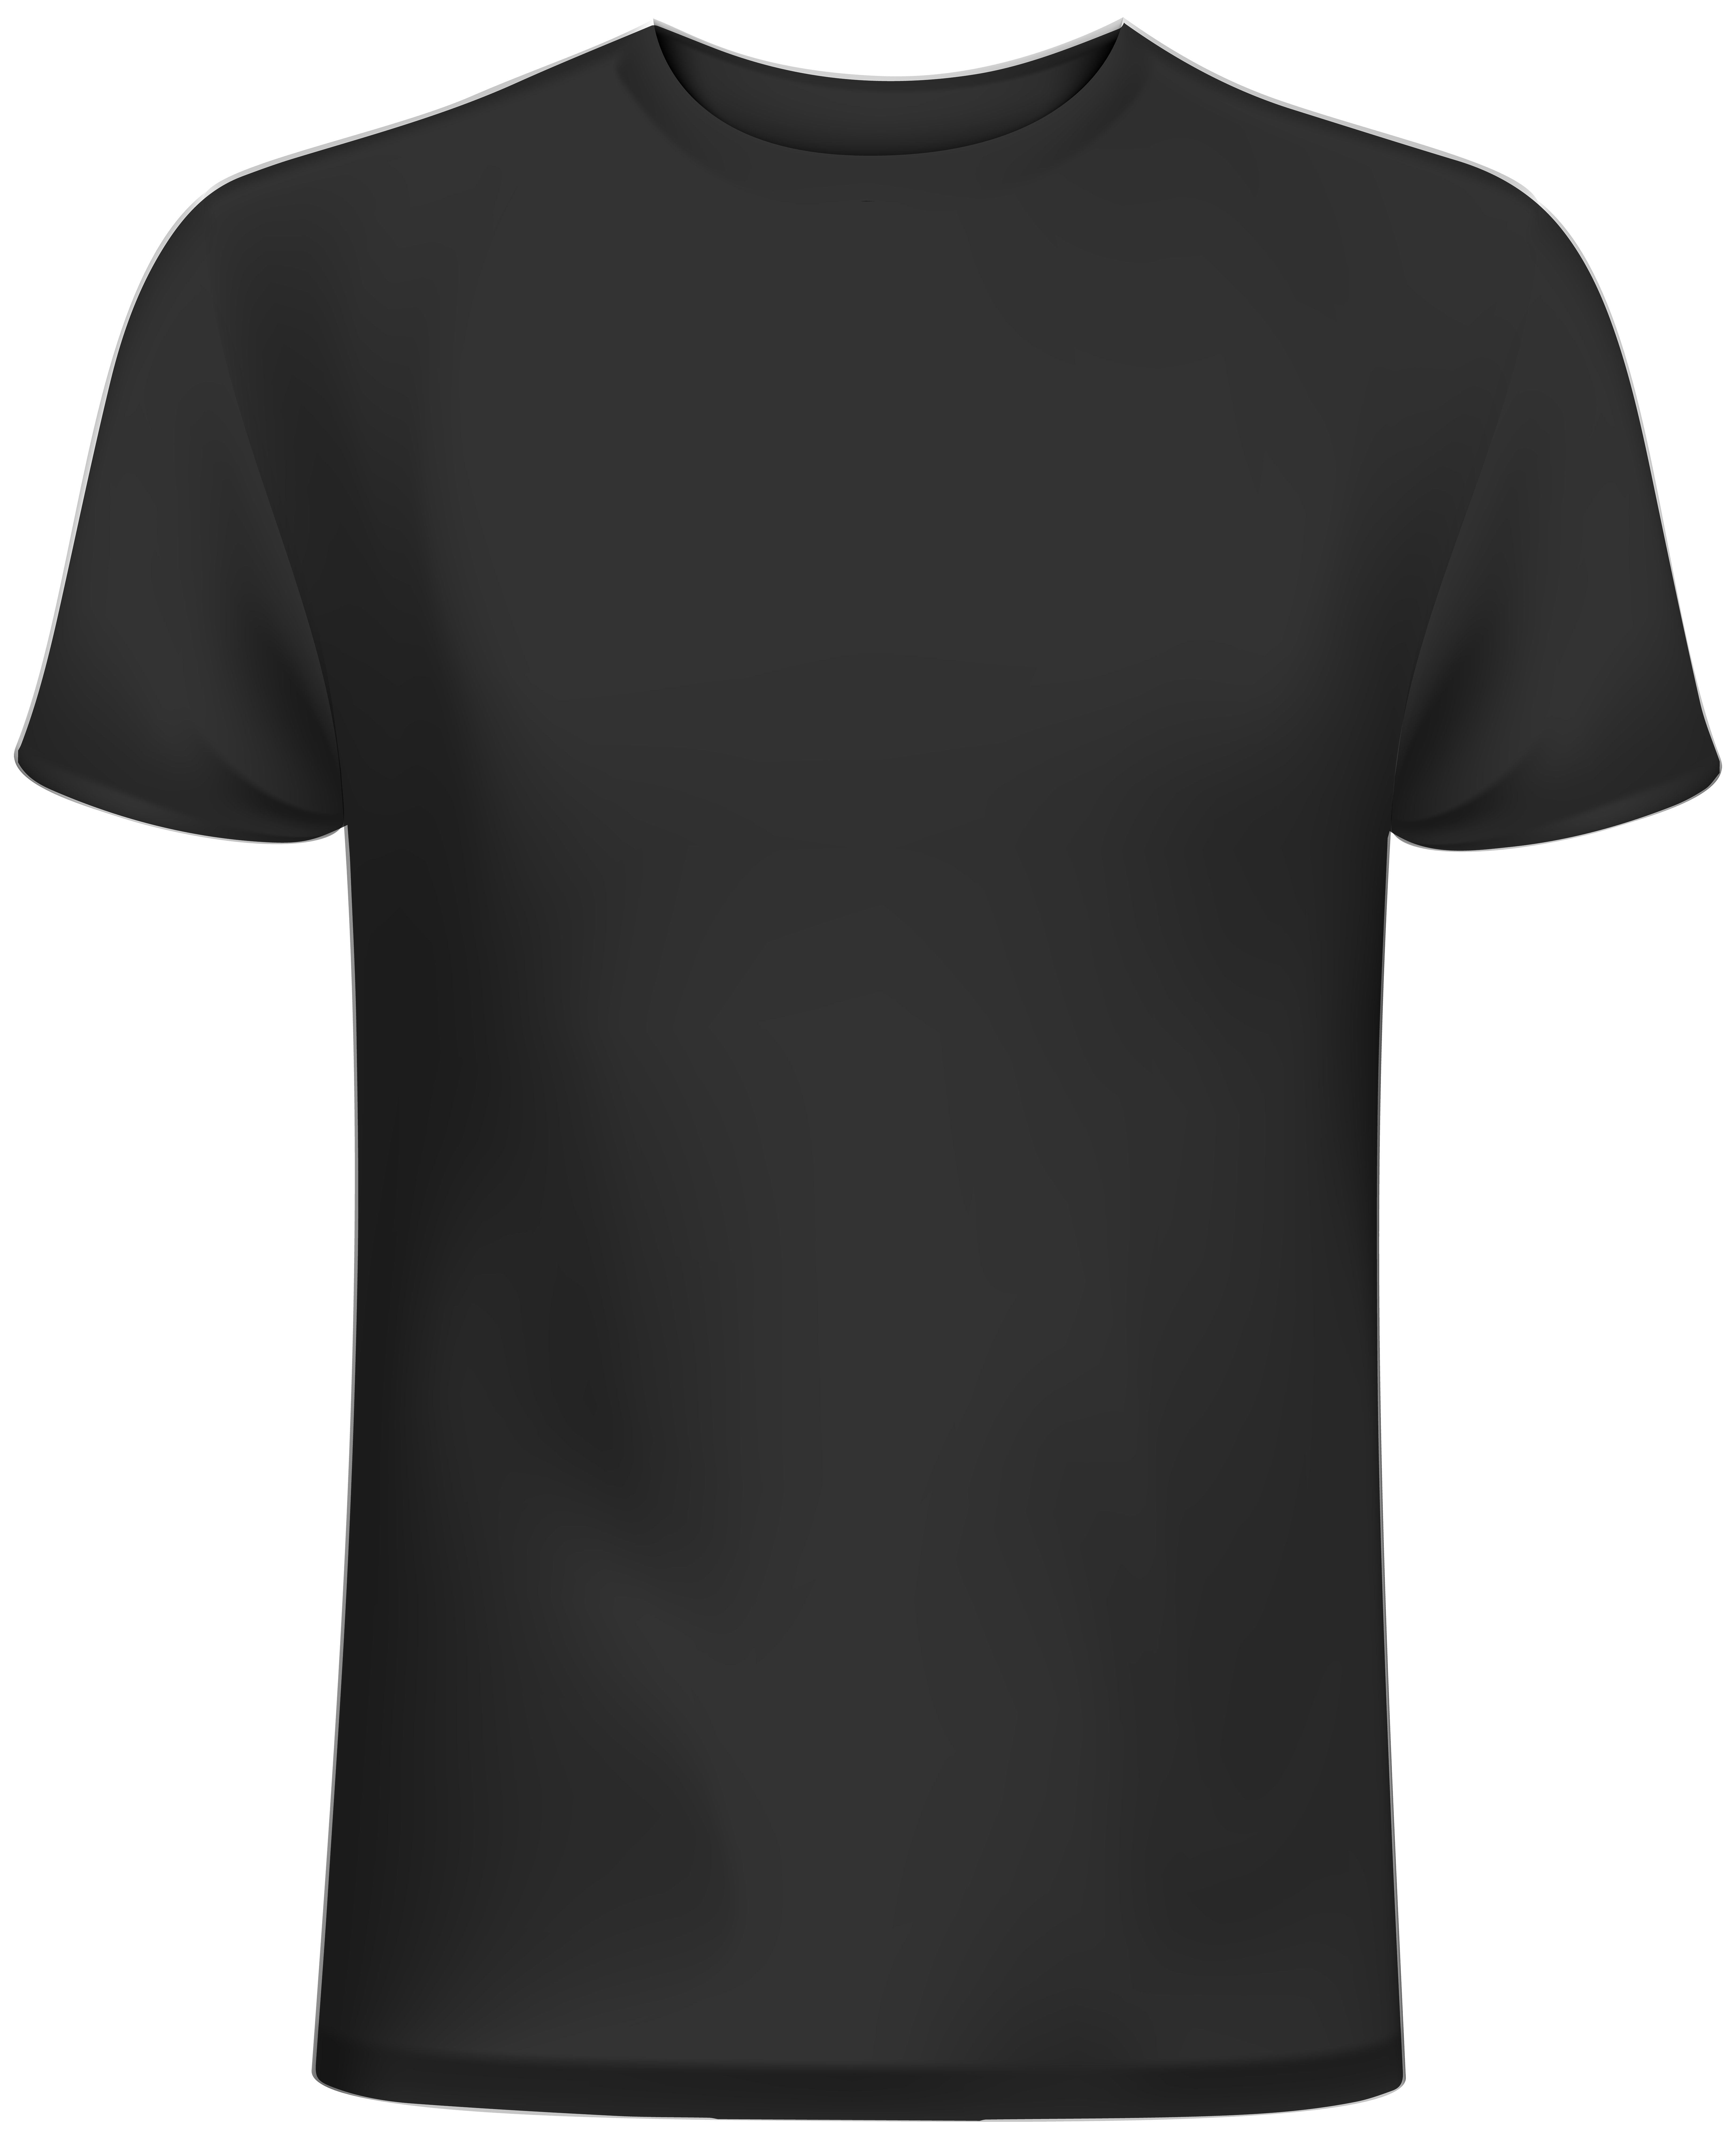 Tshirt Black Back Background PNG Image